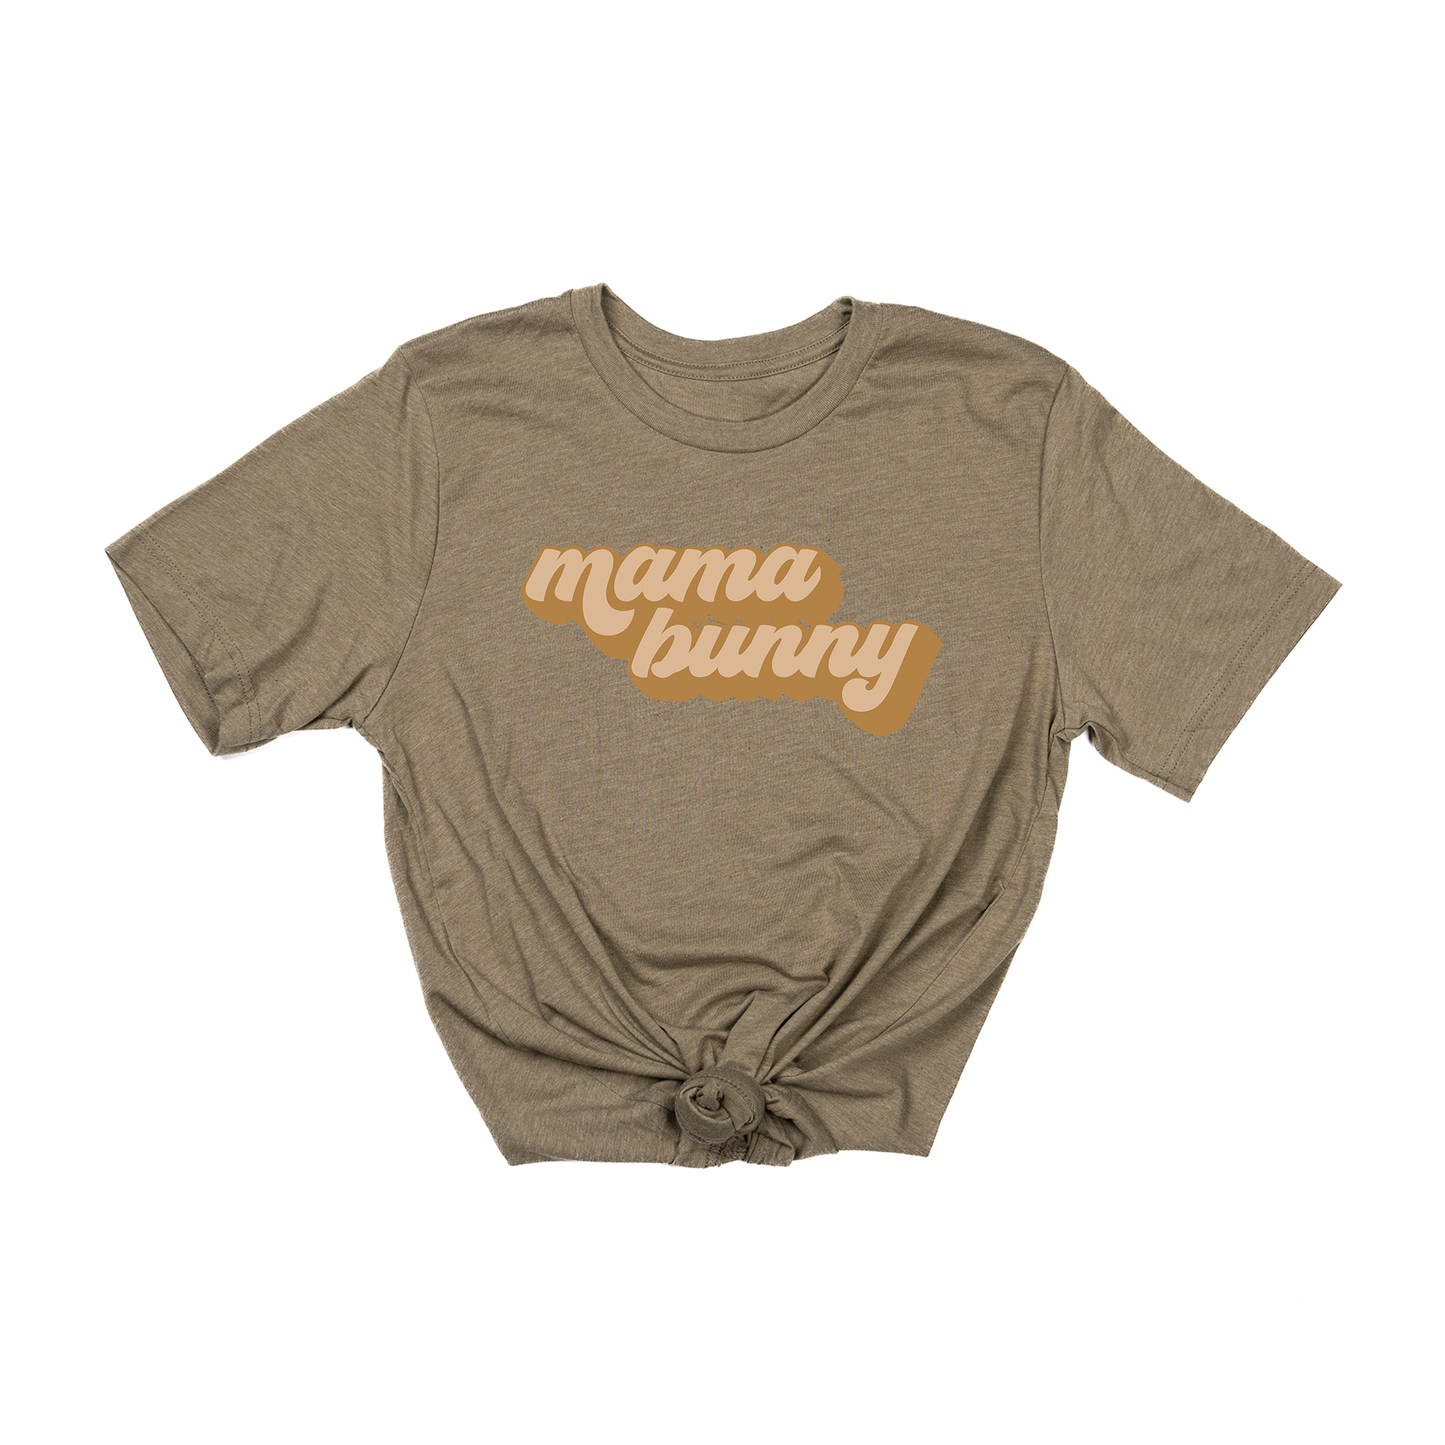 Mama Bunny (Retro) - Tee (Olive)